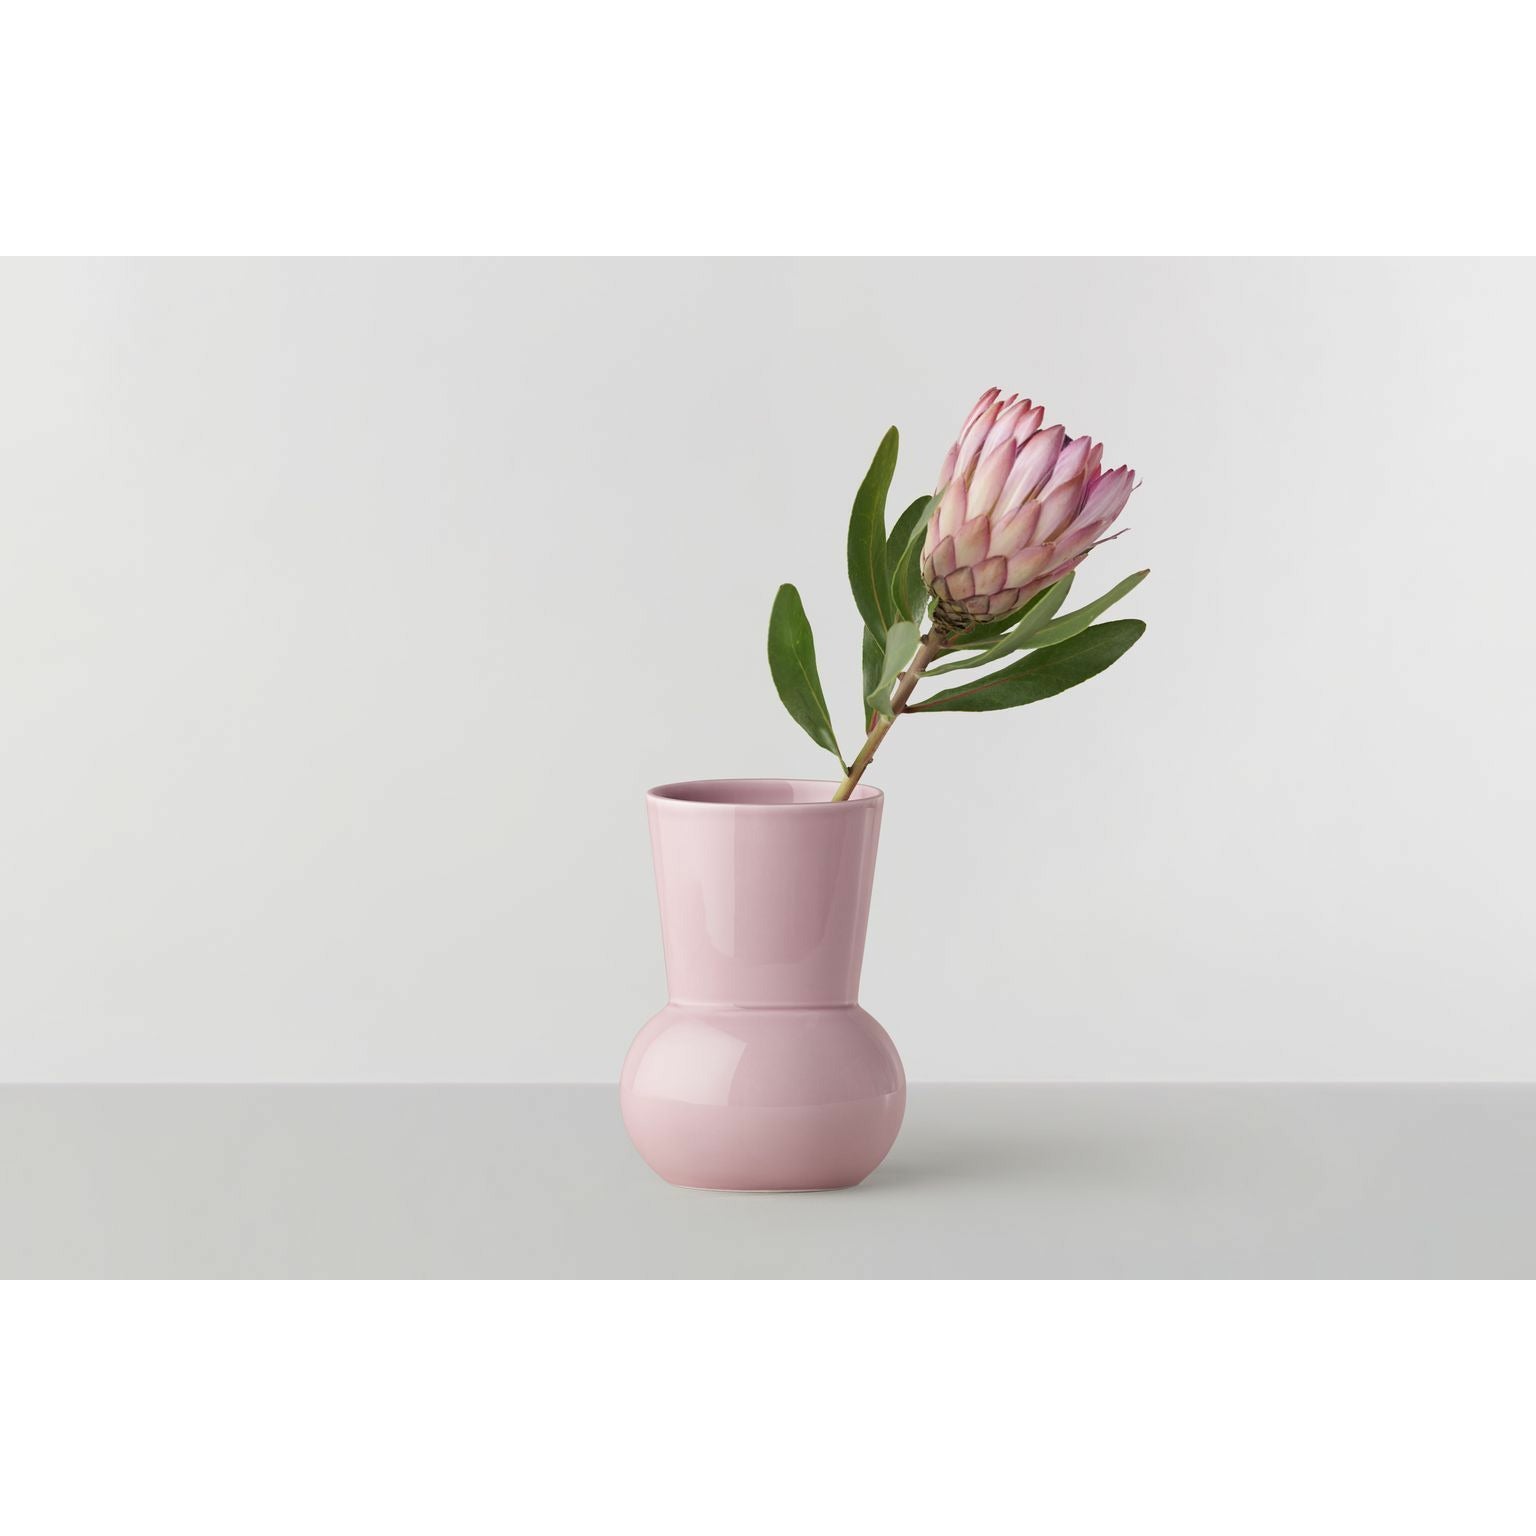 RO COLLEZIONE N. 66 Vaso ovale, rosa